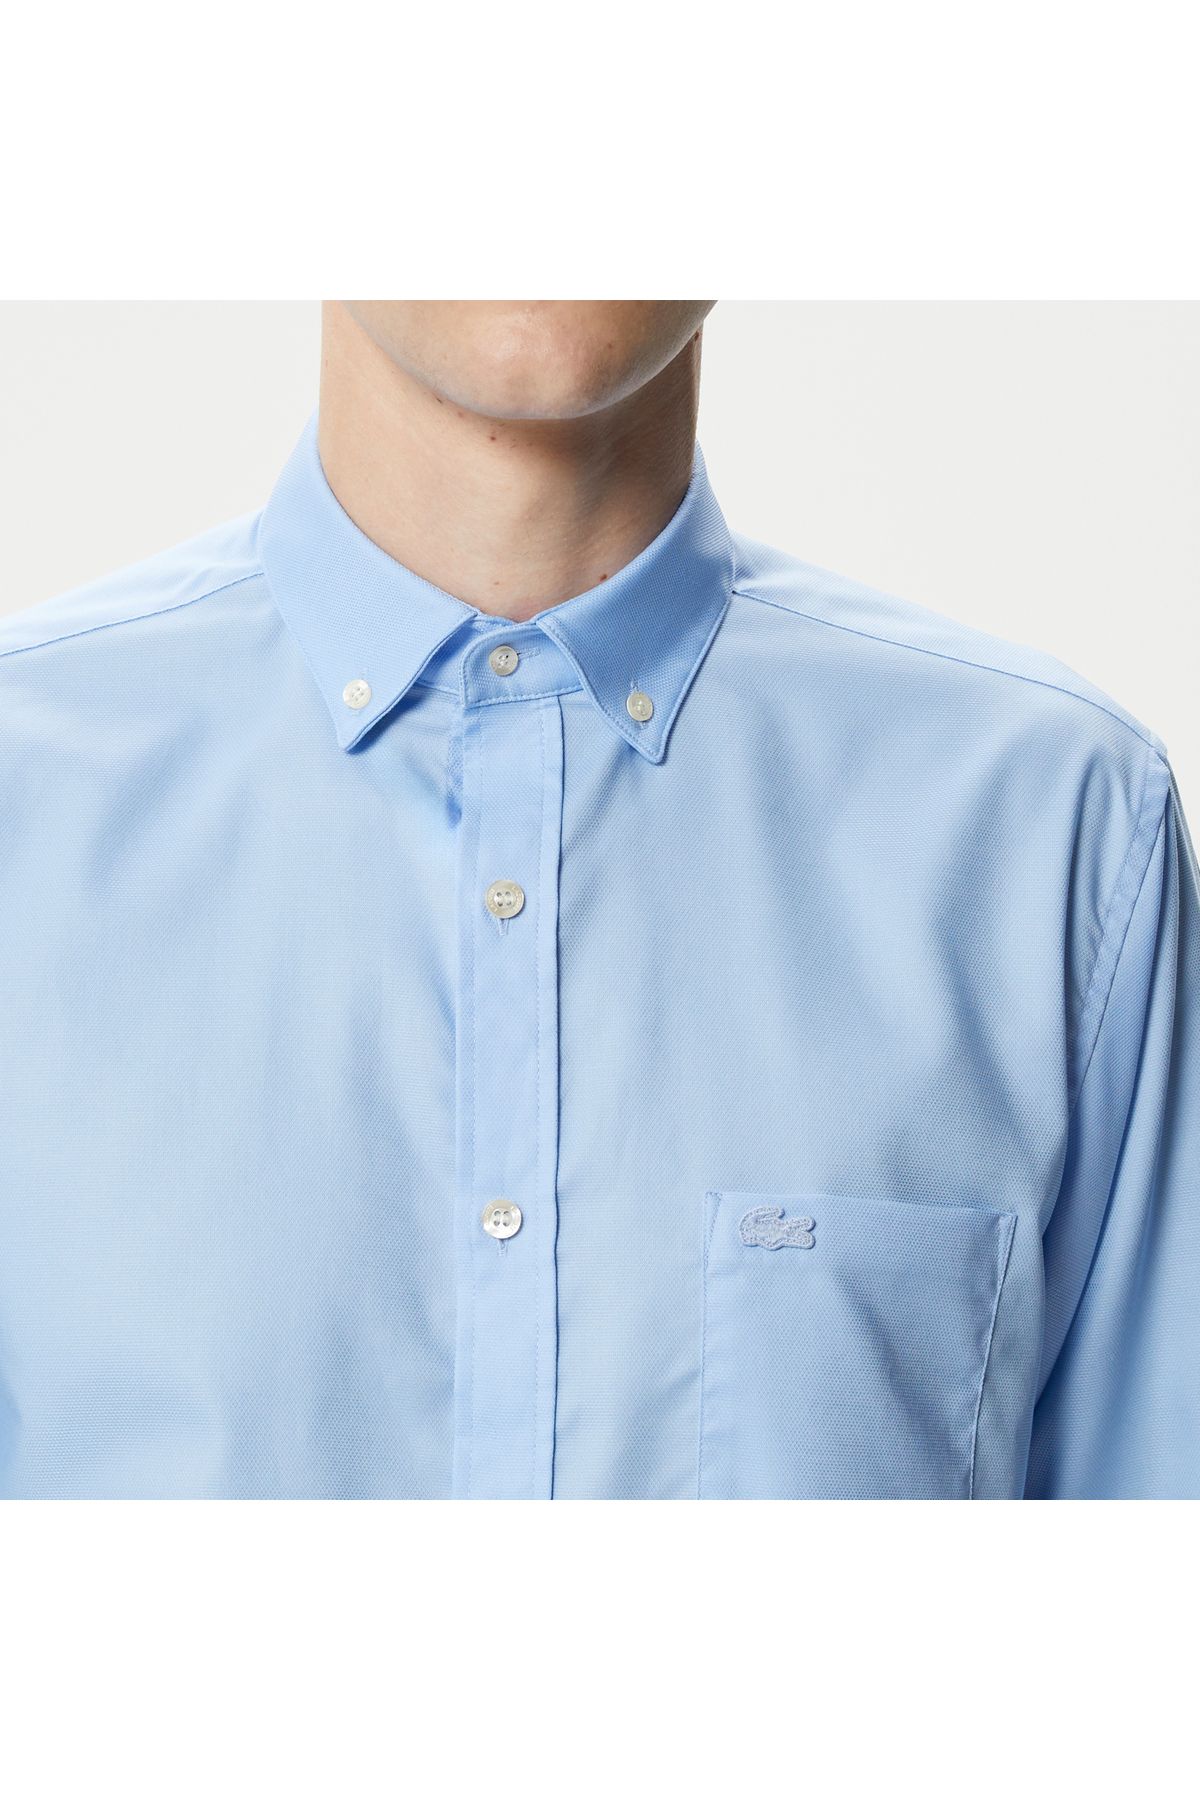 Lacoste پیراهن آبی دکمه ای مناسب مردانه